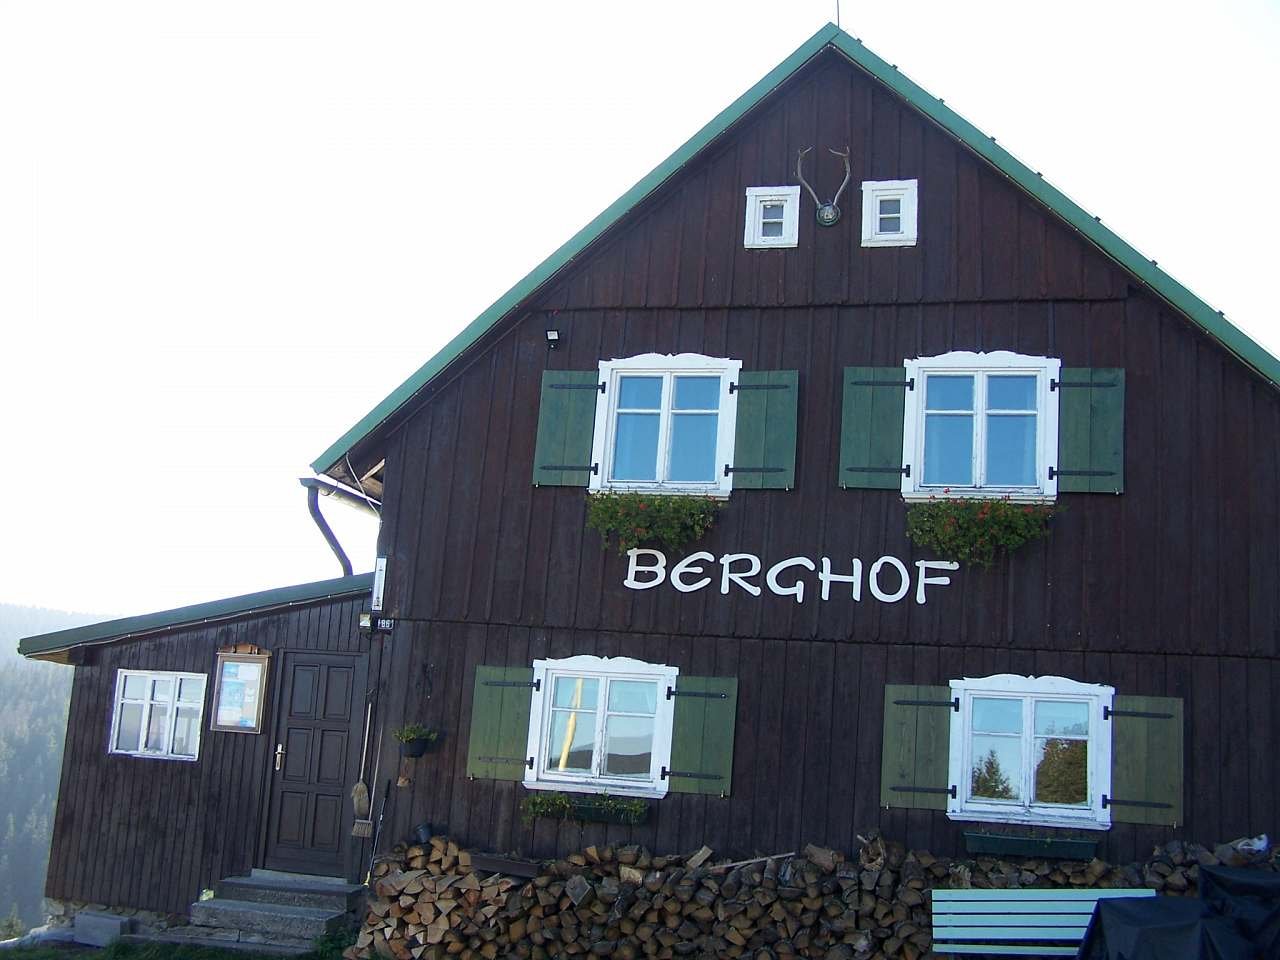 Berghof Pec pod Sněžkou